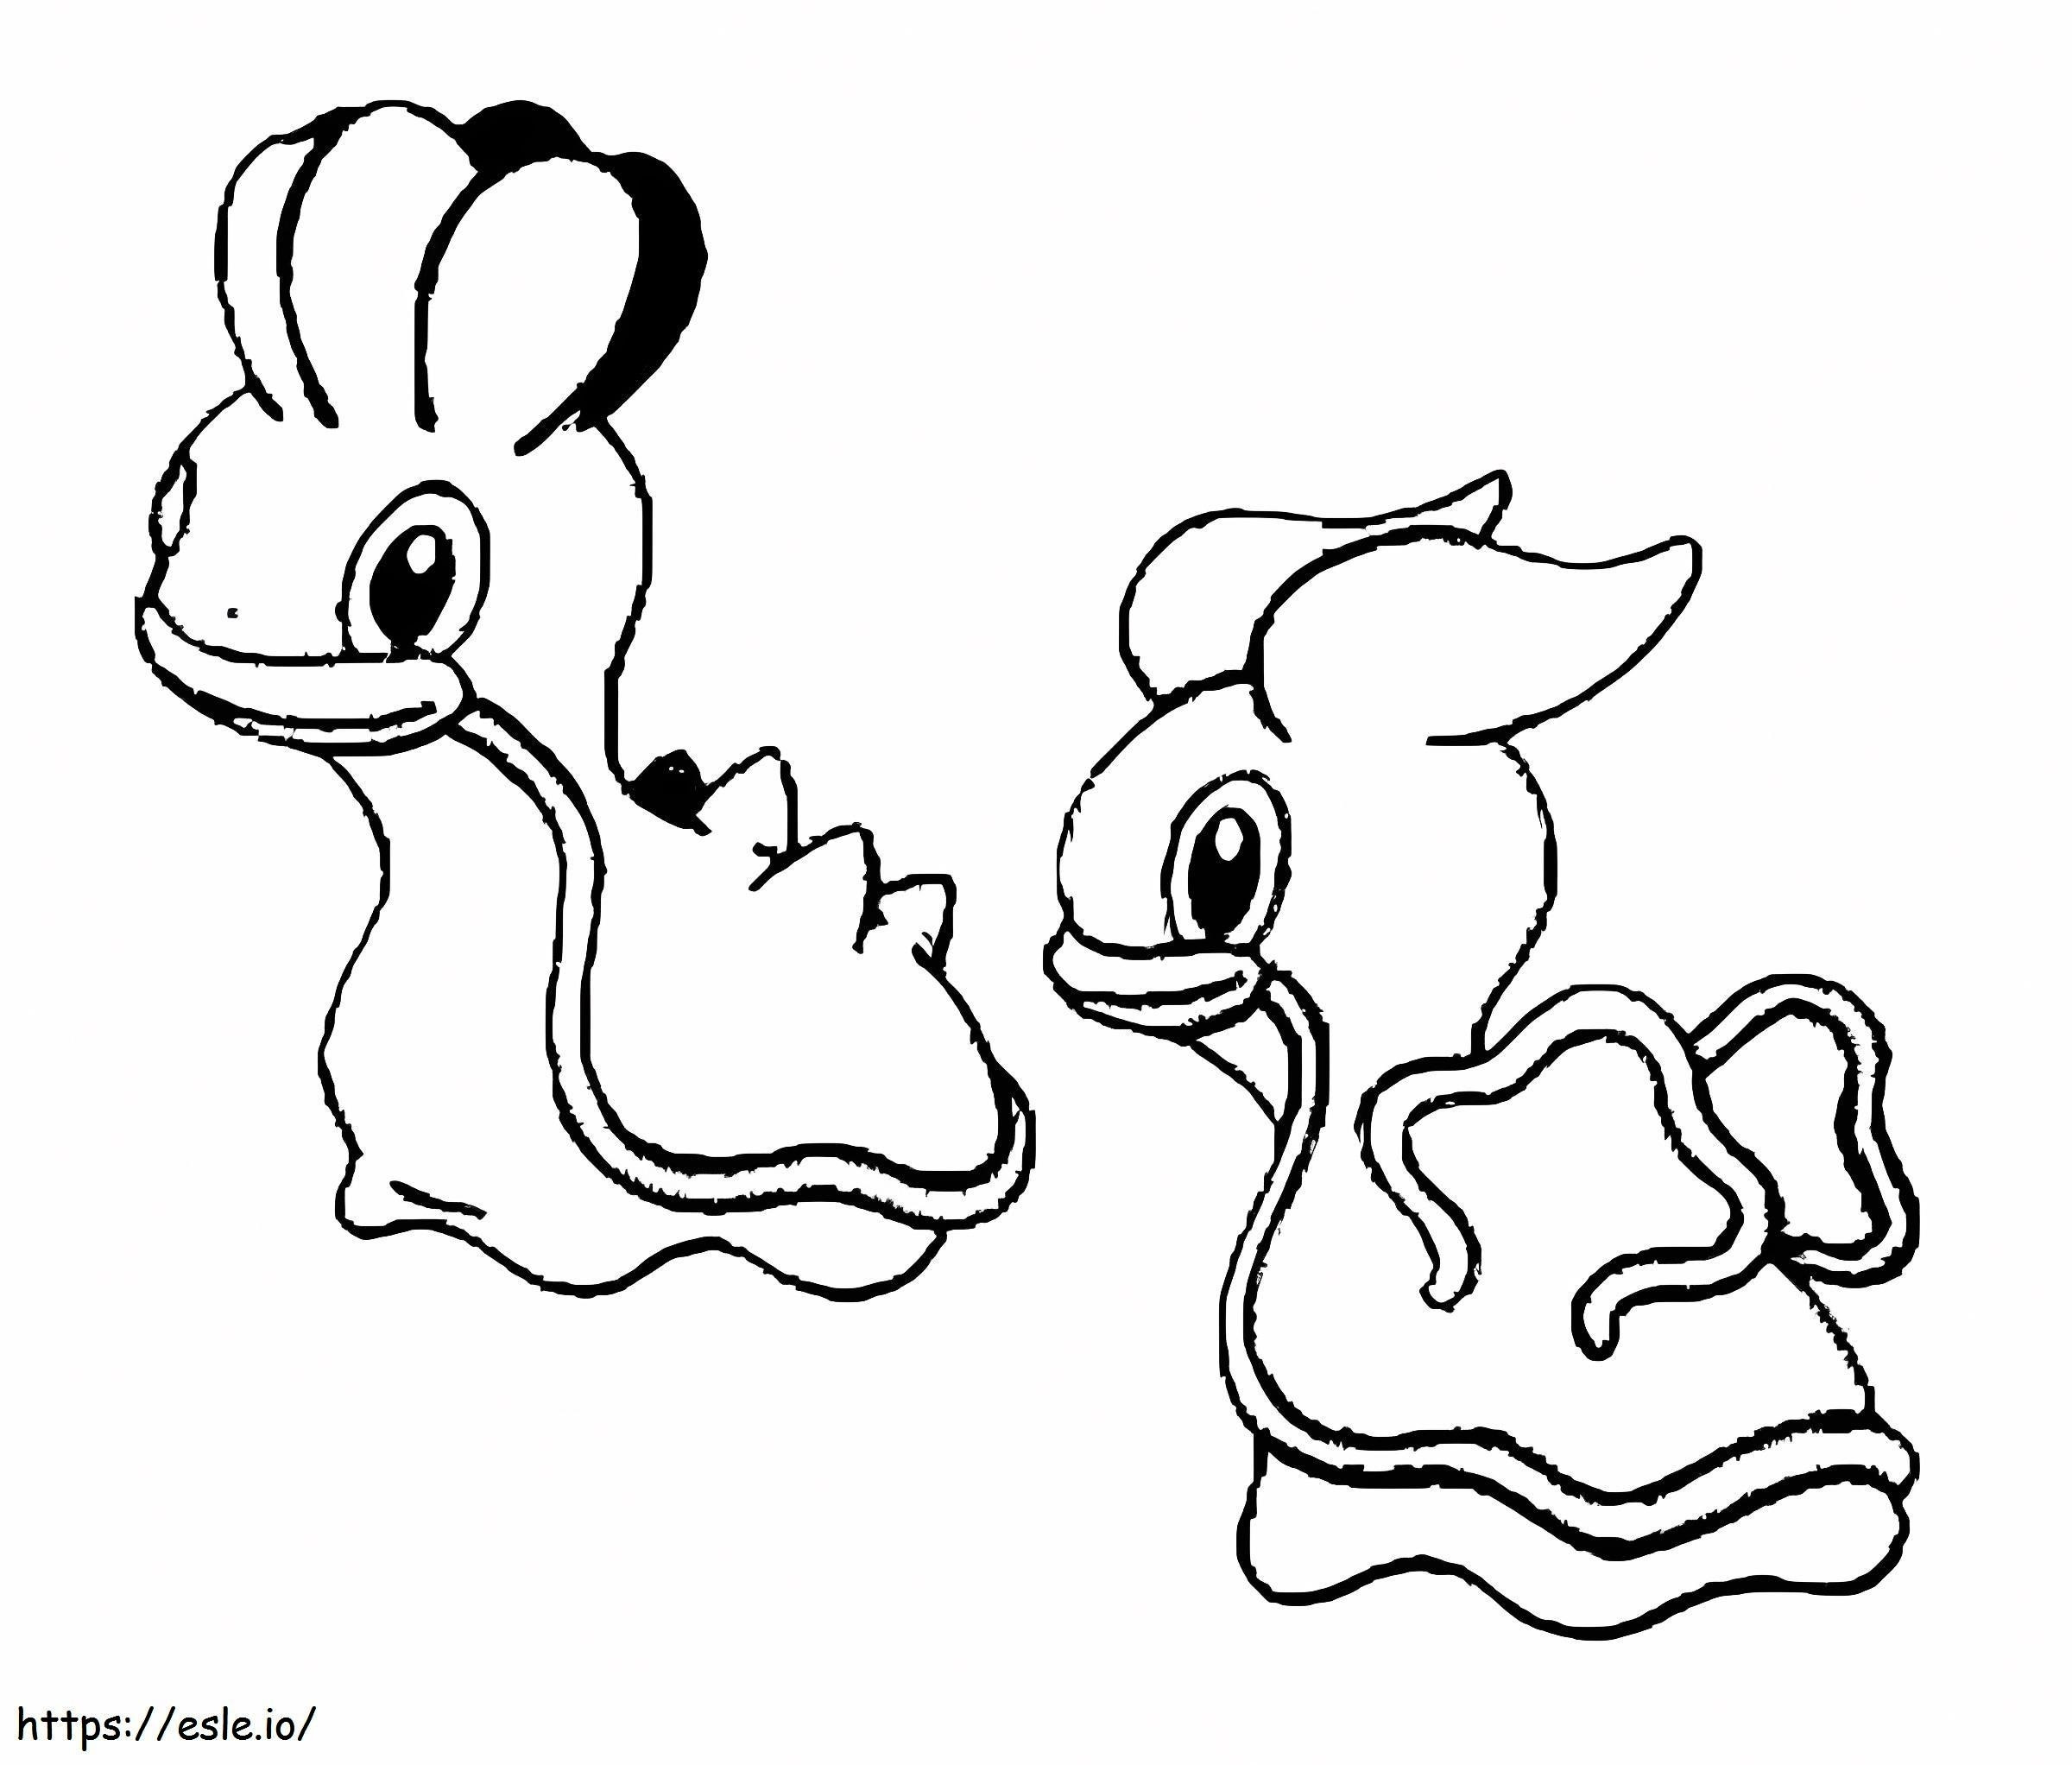 Coloriage Pokémon Shellos Gen 4 à imprimer dessin